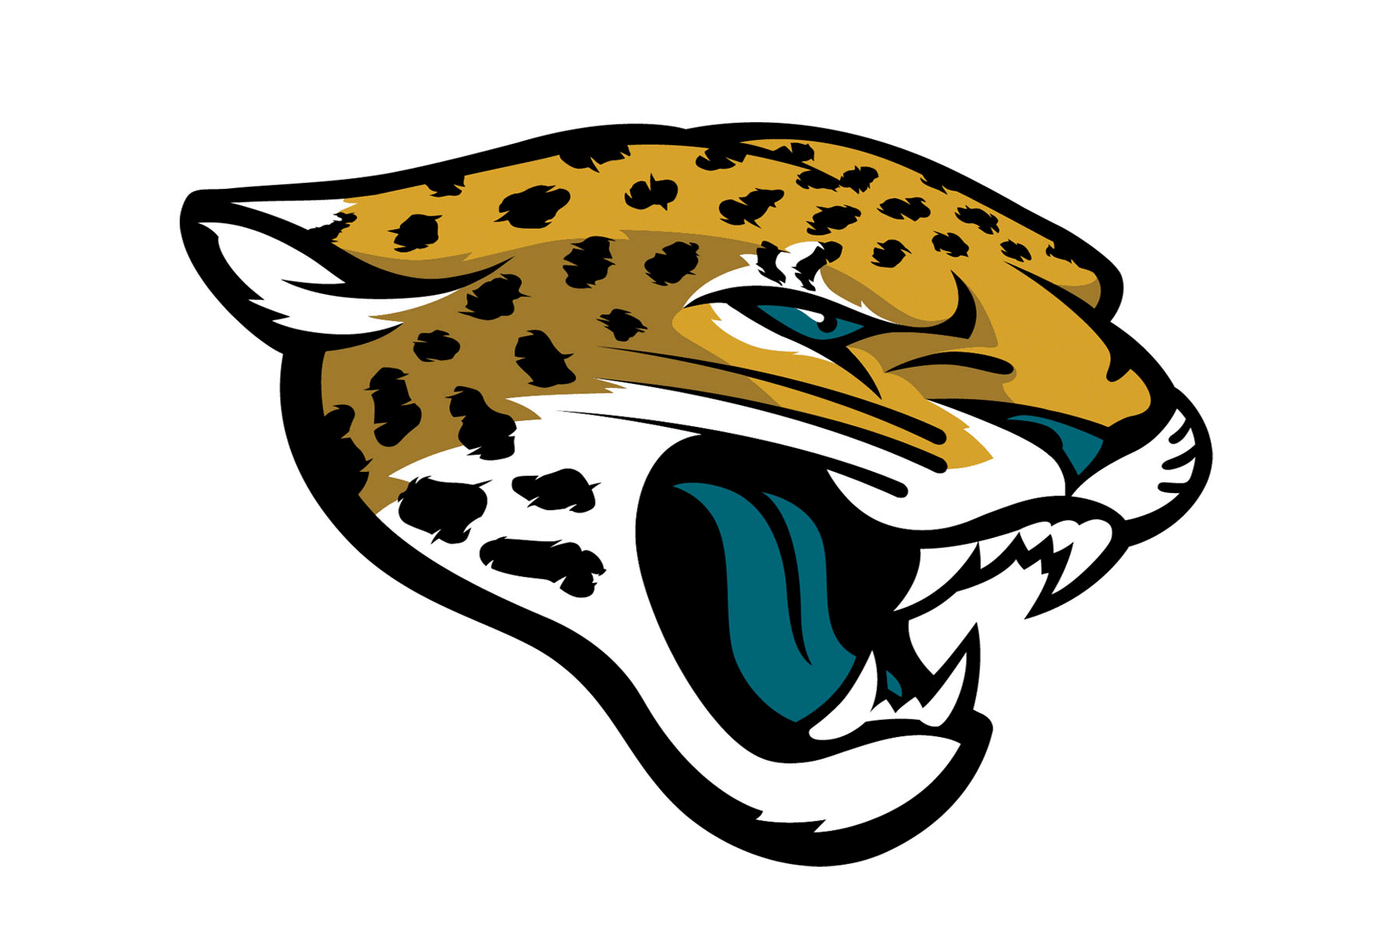 Jacksonville Jaguars Football Helmet